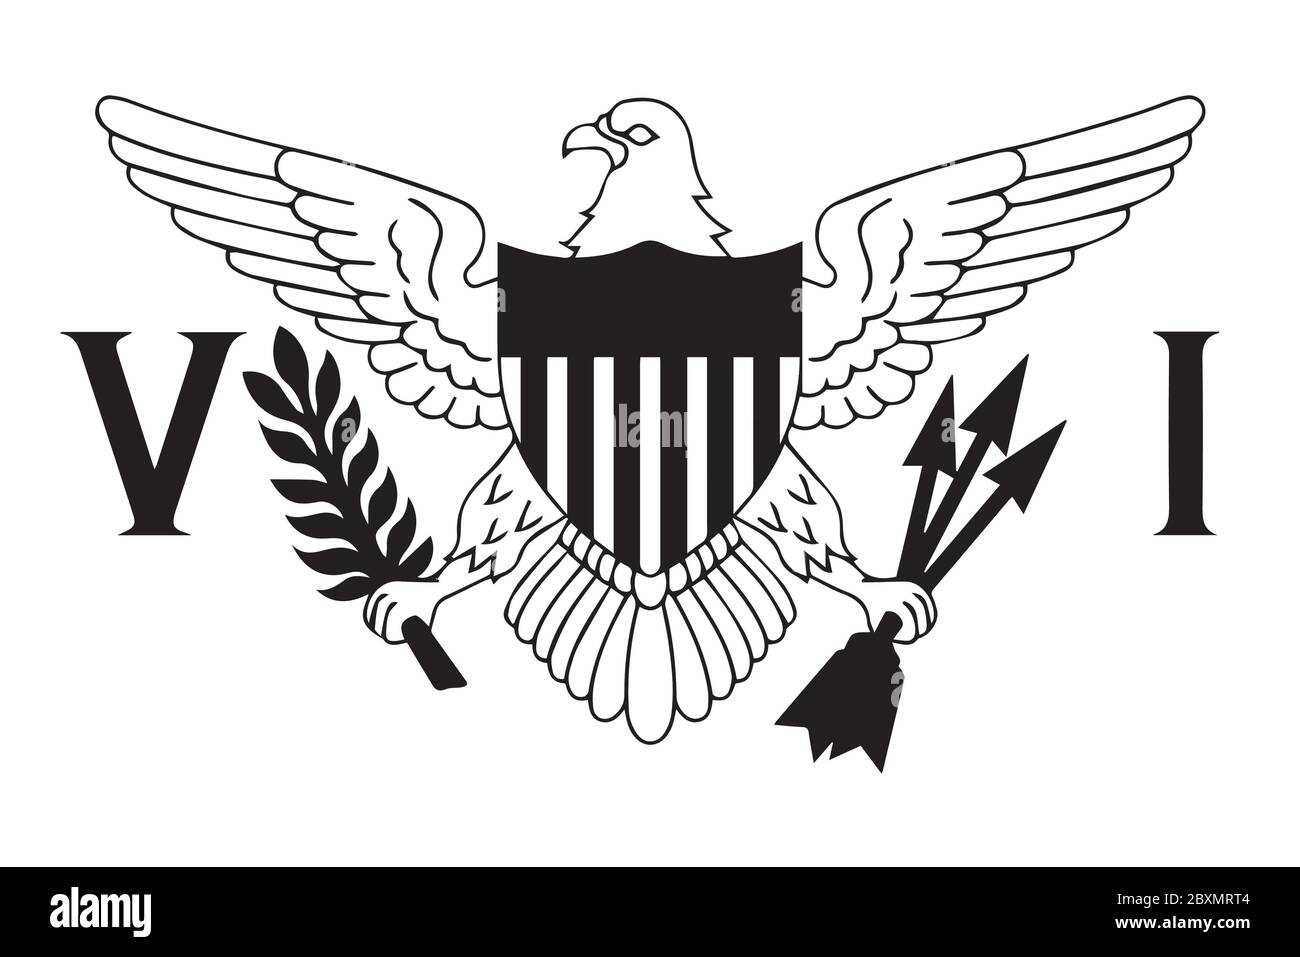 Flagge der Jungferninseln der Vereinigten Staaten. Schwarz-weiße EPS-Vektordatei. Stock Vektor